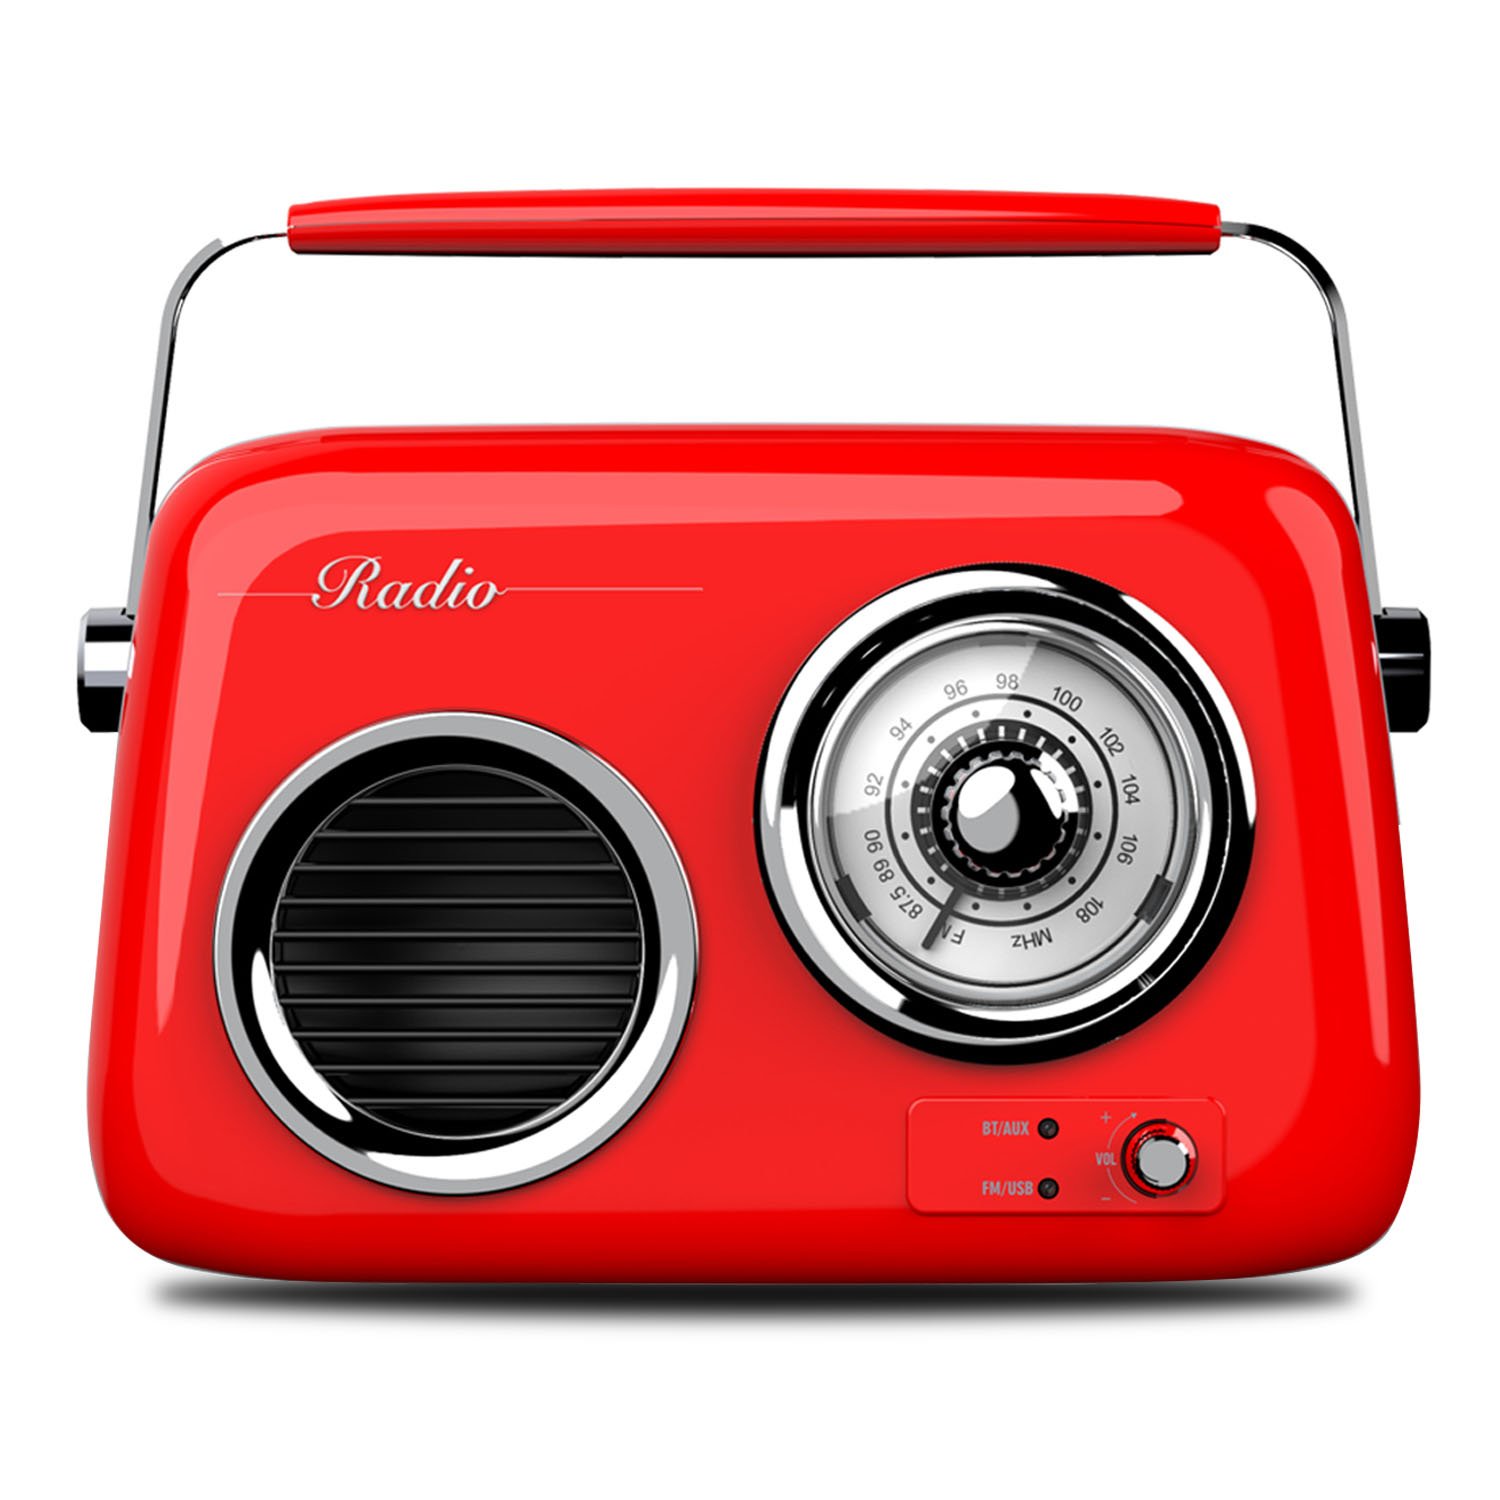 Radio Portátil Suono Bluetooth Vintage Retro Negra - SUONO RADIOS